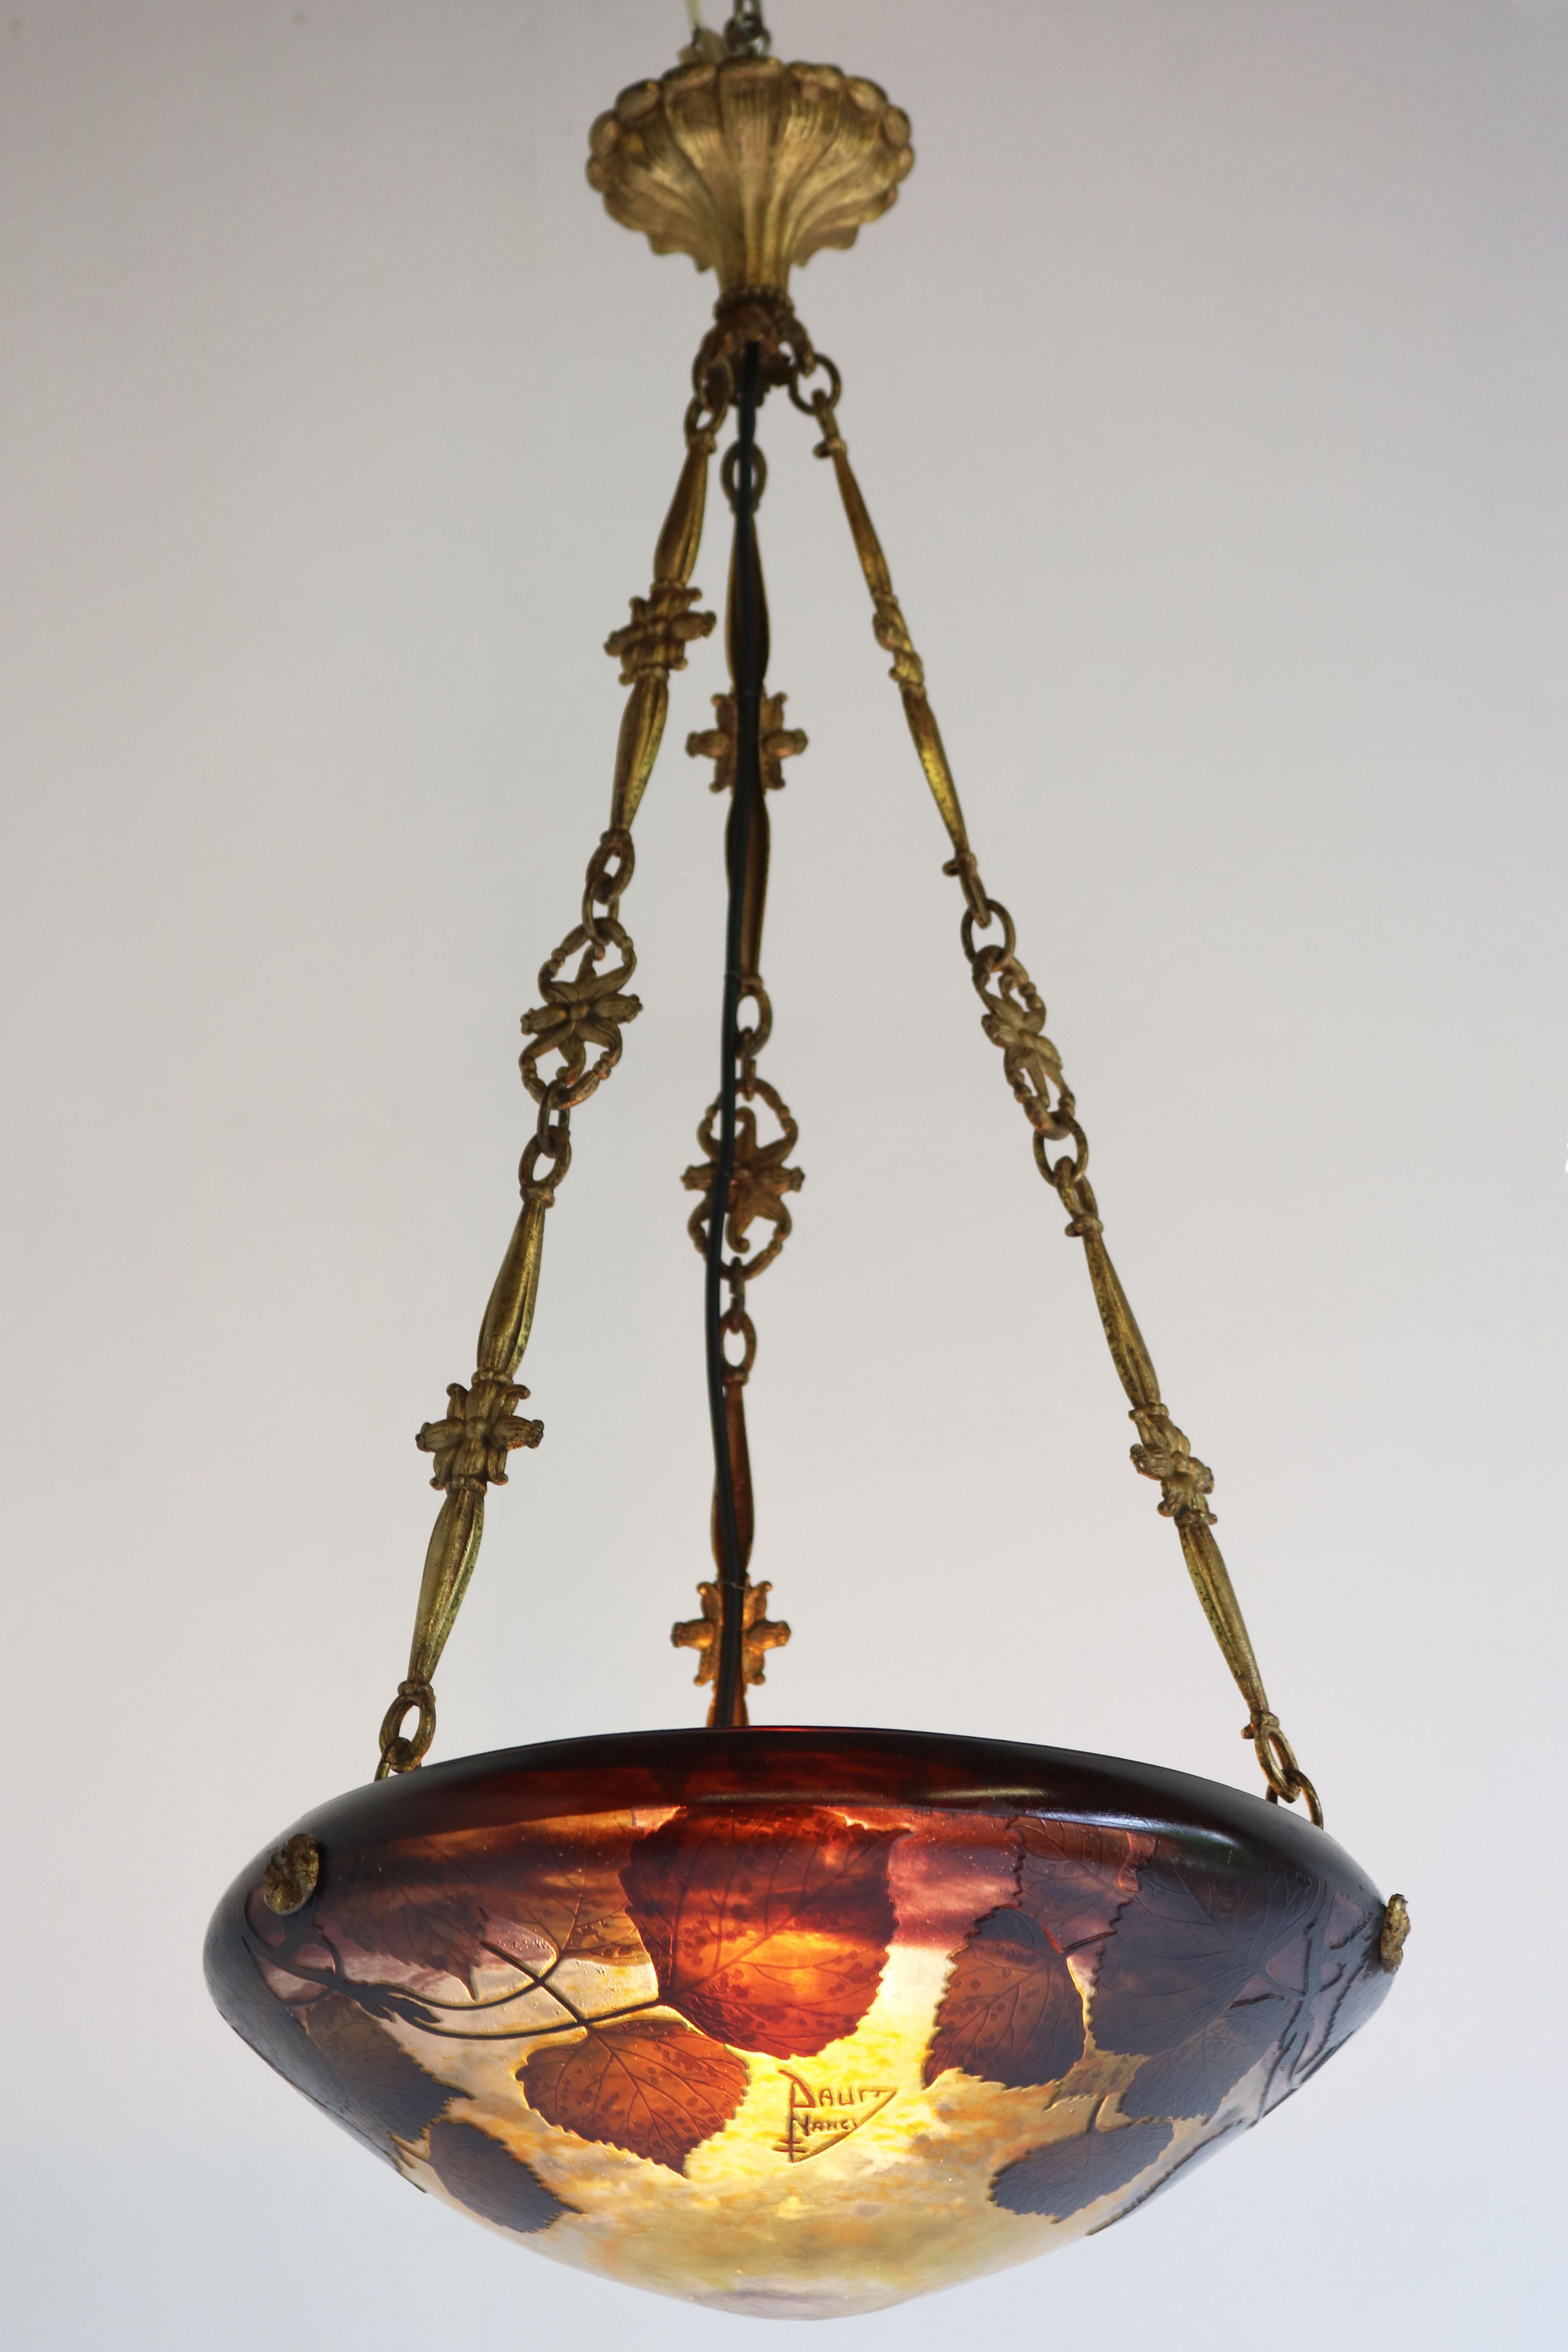 French Art nouveau Chandelier / Pendant light by Daum Nancy & A. Petitot 1910 France For Sale